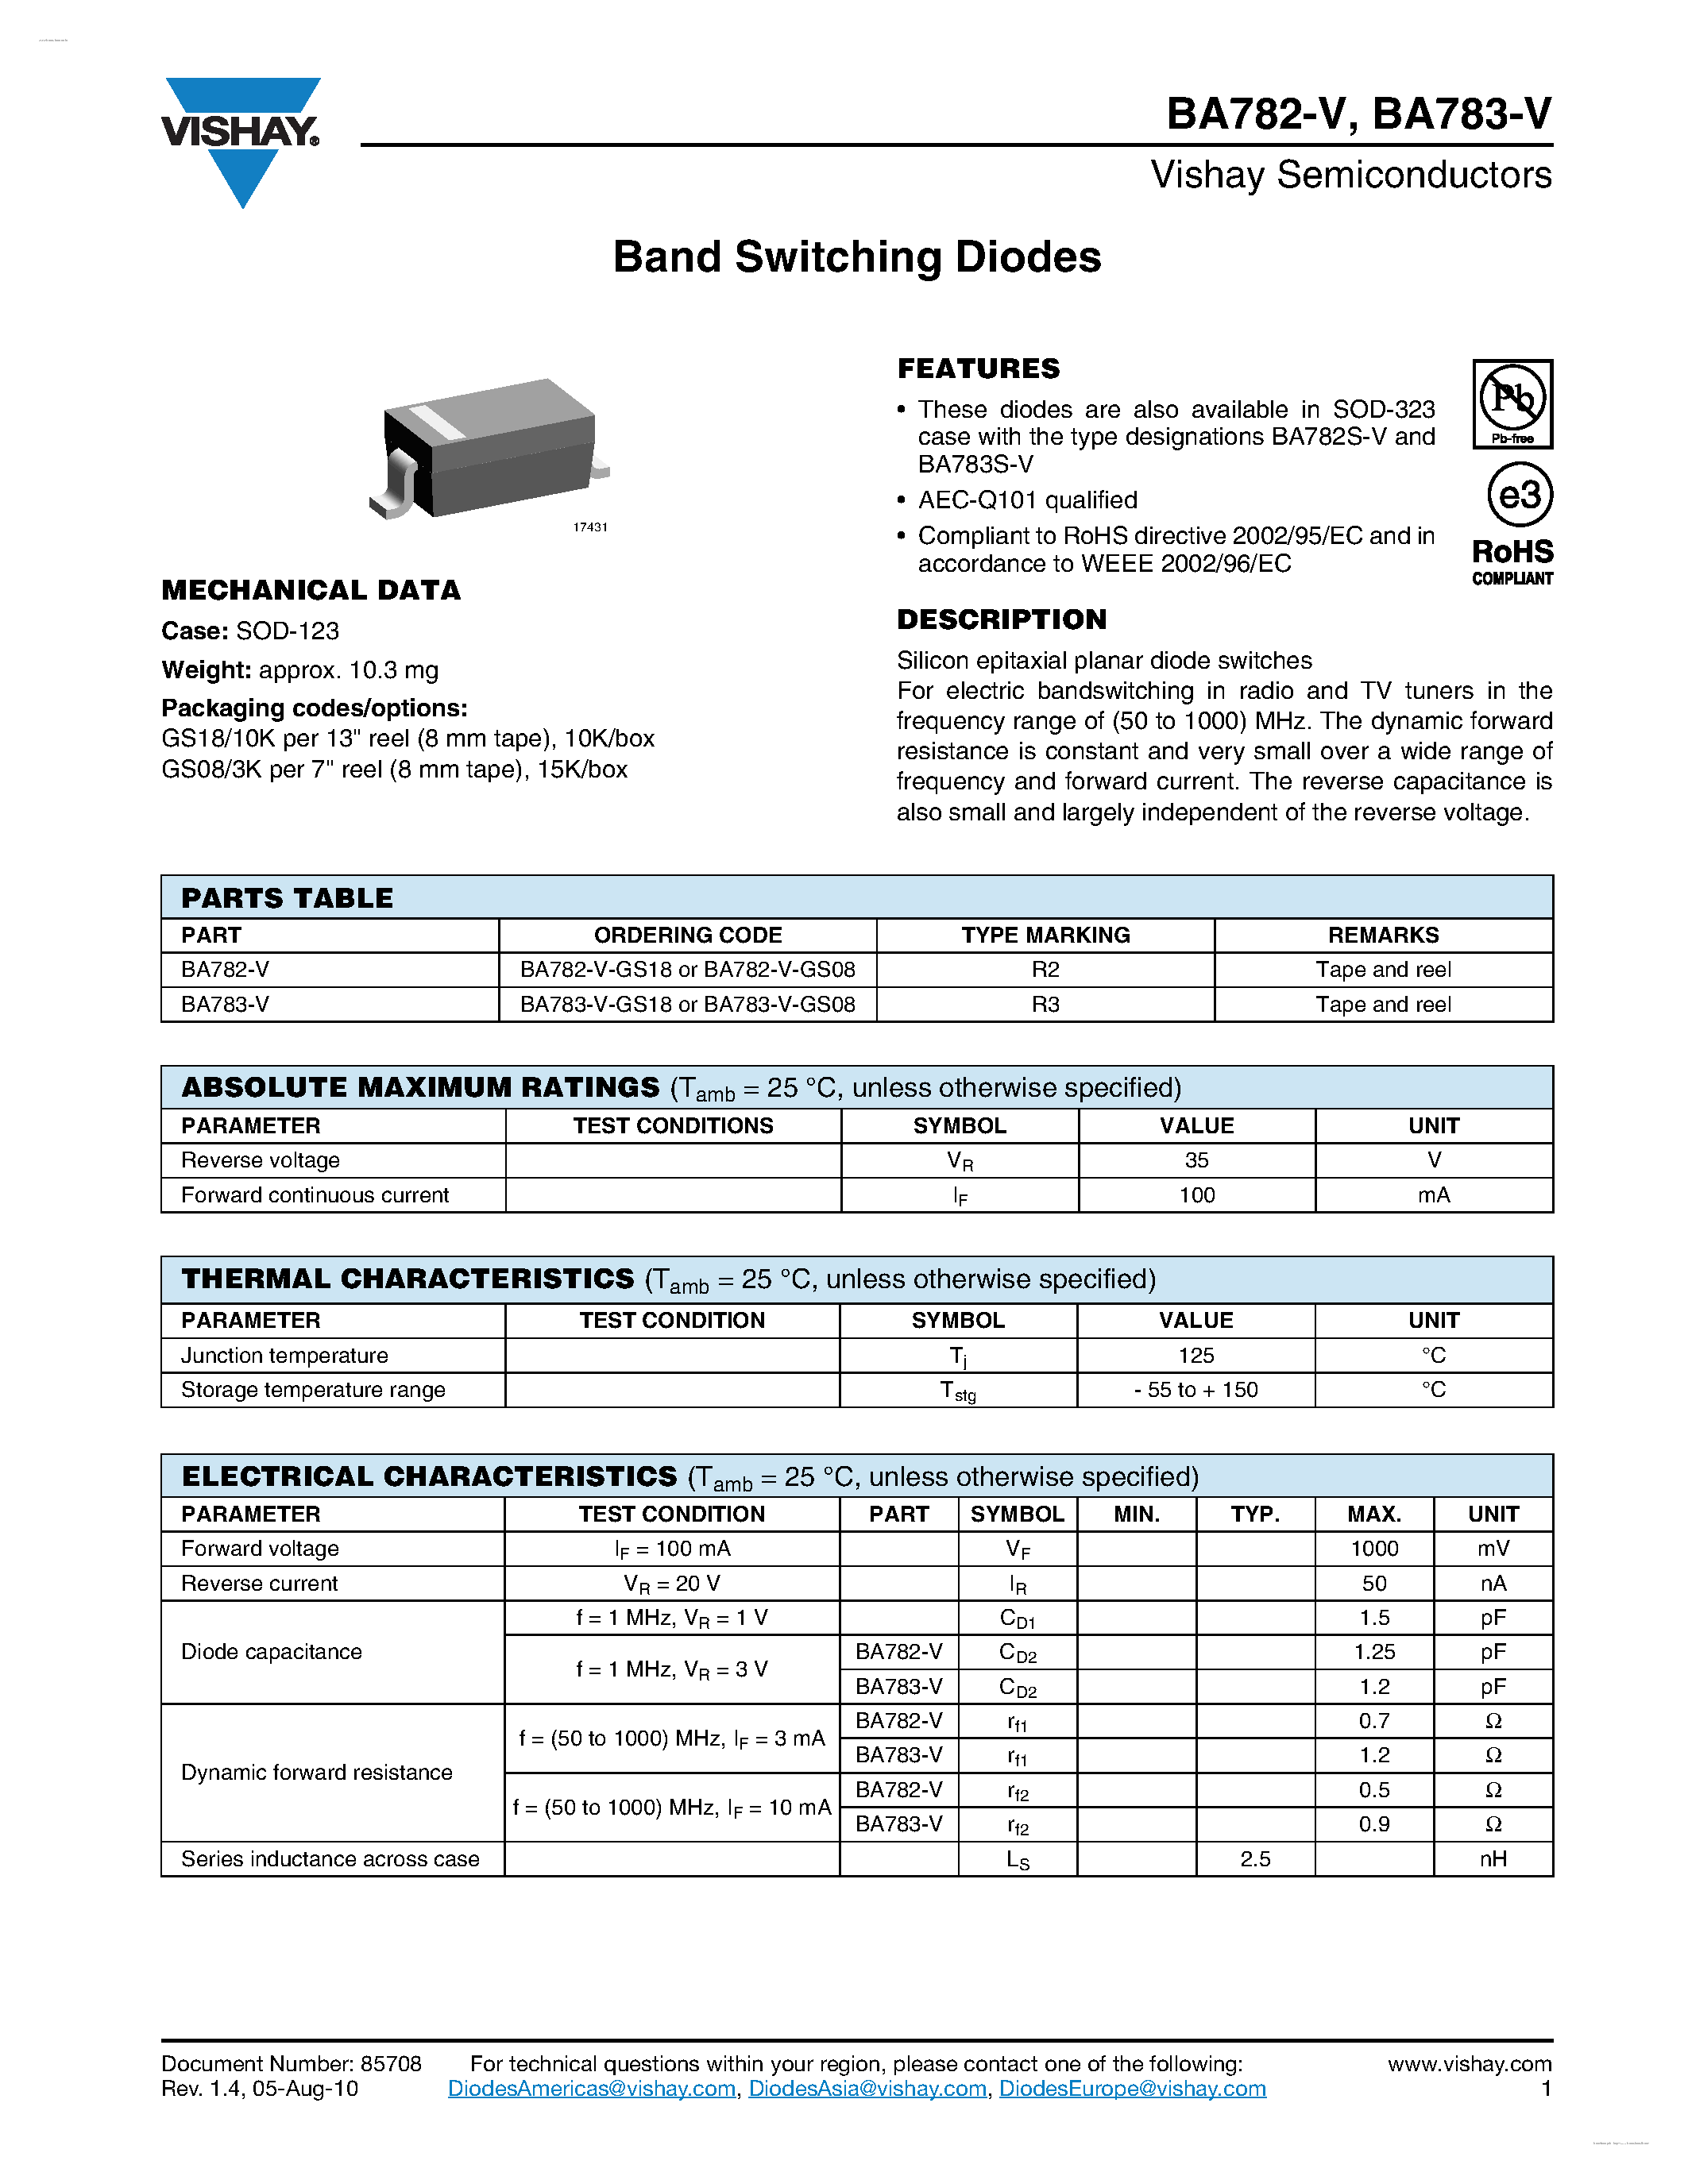 Datasheet BA782-V - (BA782-V / BA783-V) Band Switching Diodes page 1